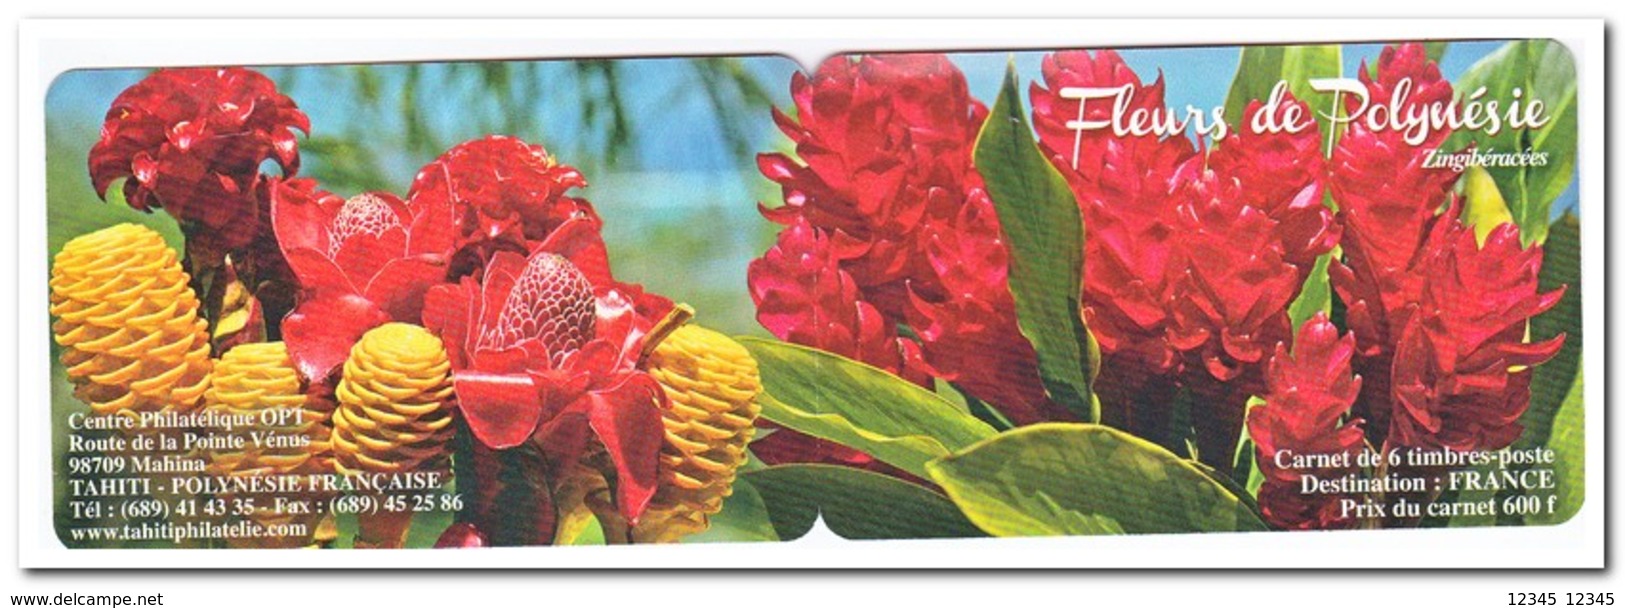 Polynesië 2012, Postfris MNH, Flowers ( Booklet ) - Postzegelboekjes